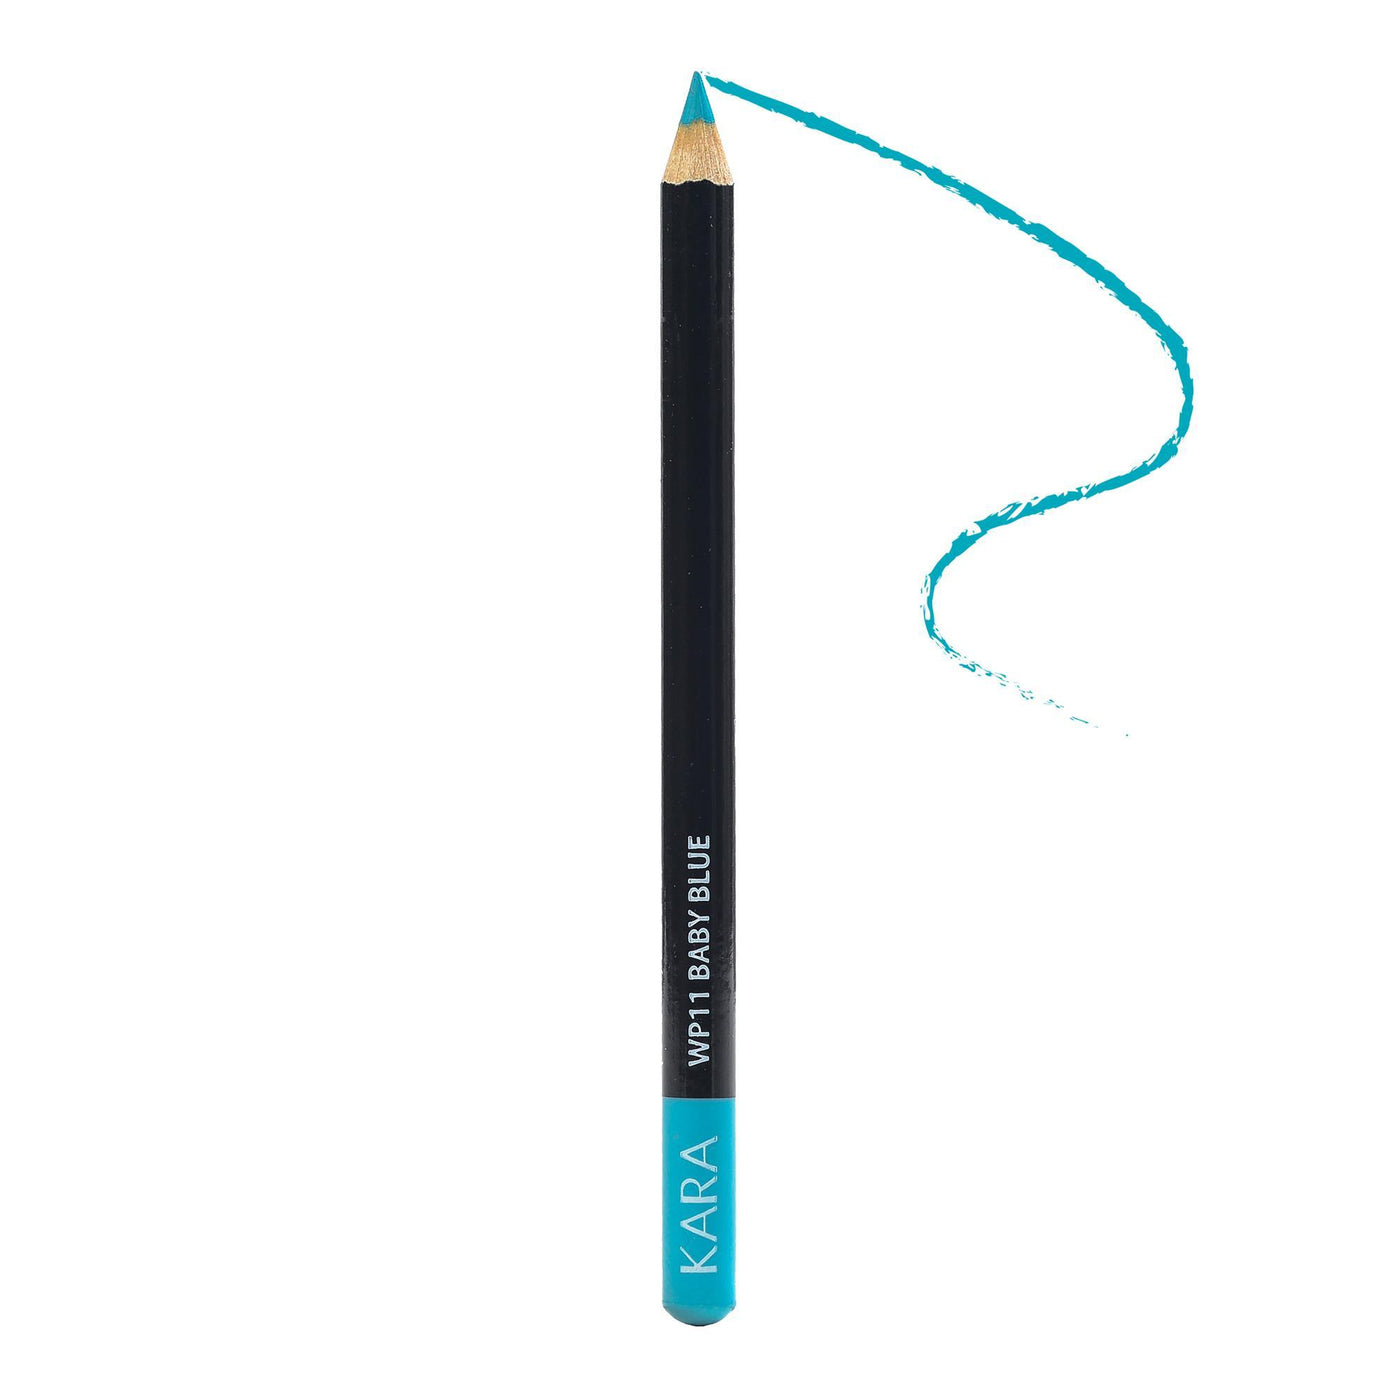 Kara Beauty Eye & Brow Liner Pencil - WP11 - Baby Blue